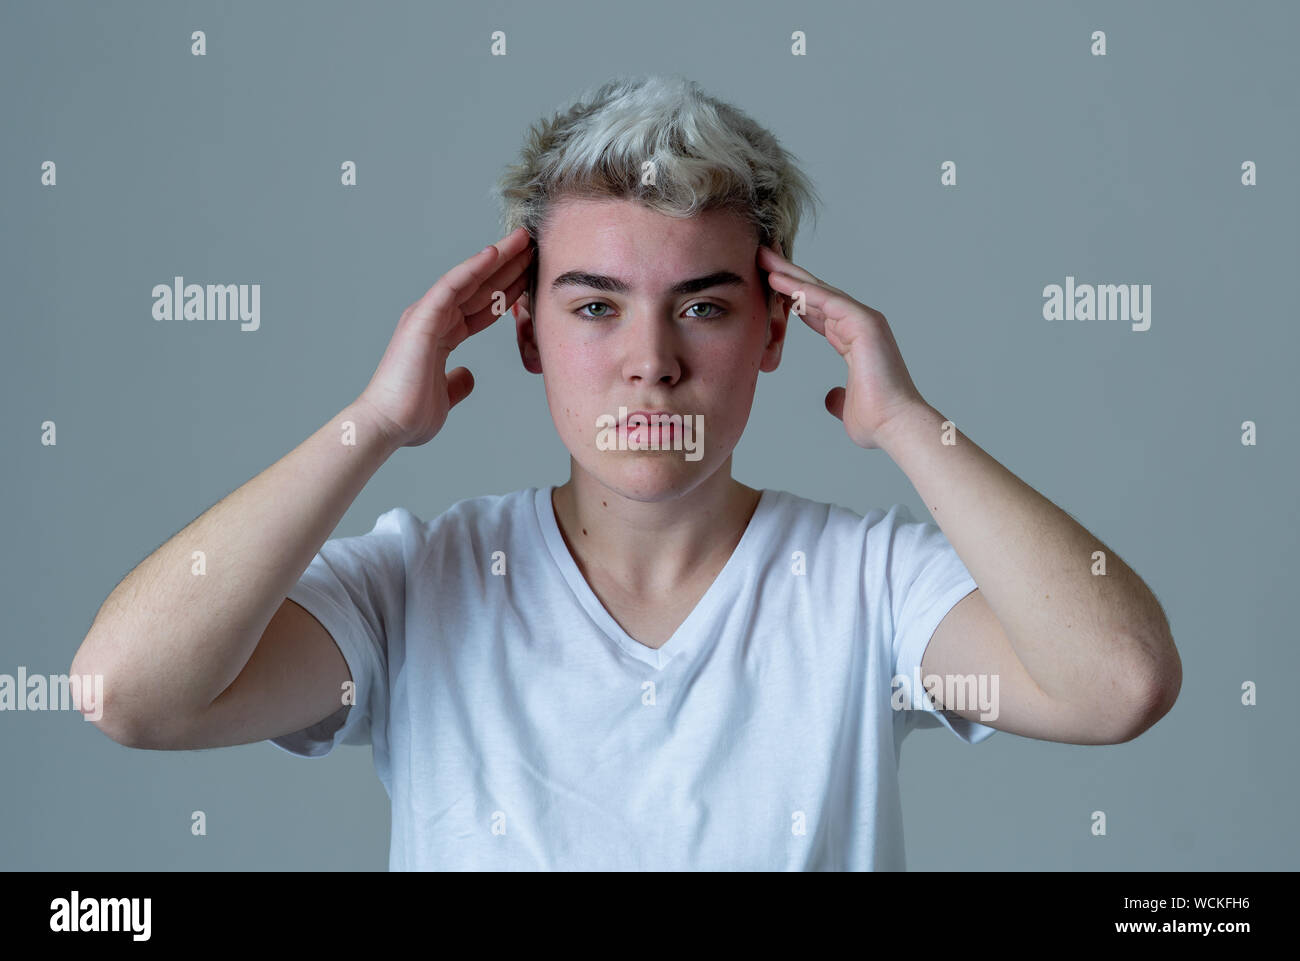 Retrato de un joven adolescente transgénero mirando preocupado y reflexivo que sufren migrañas y el dolor emocional. La gente de la diversidad y la identidad de género Foto de stock